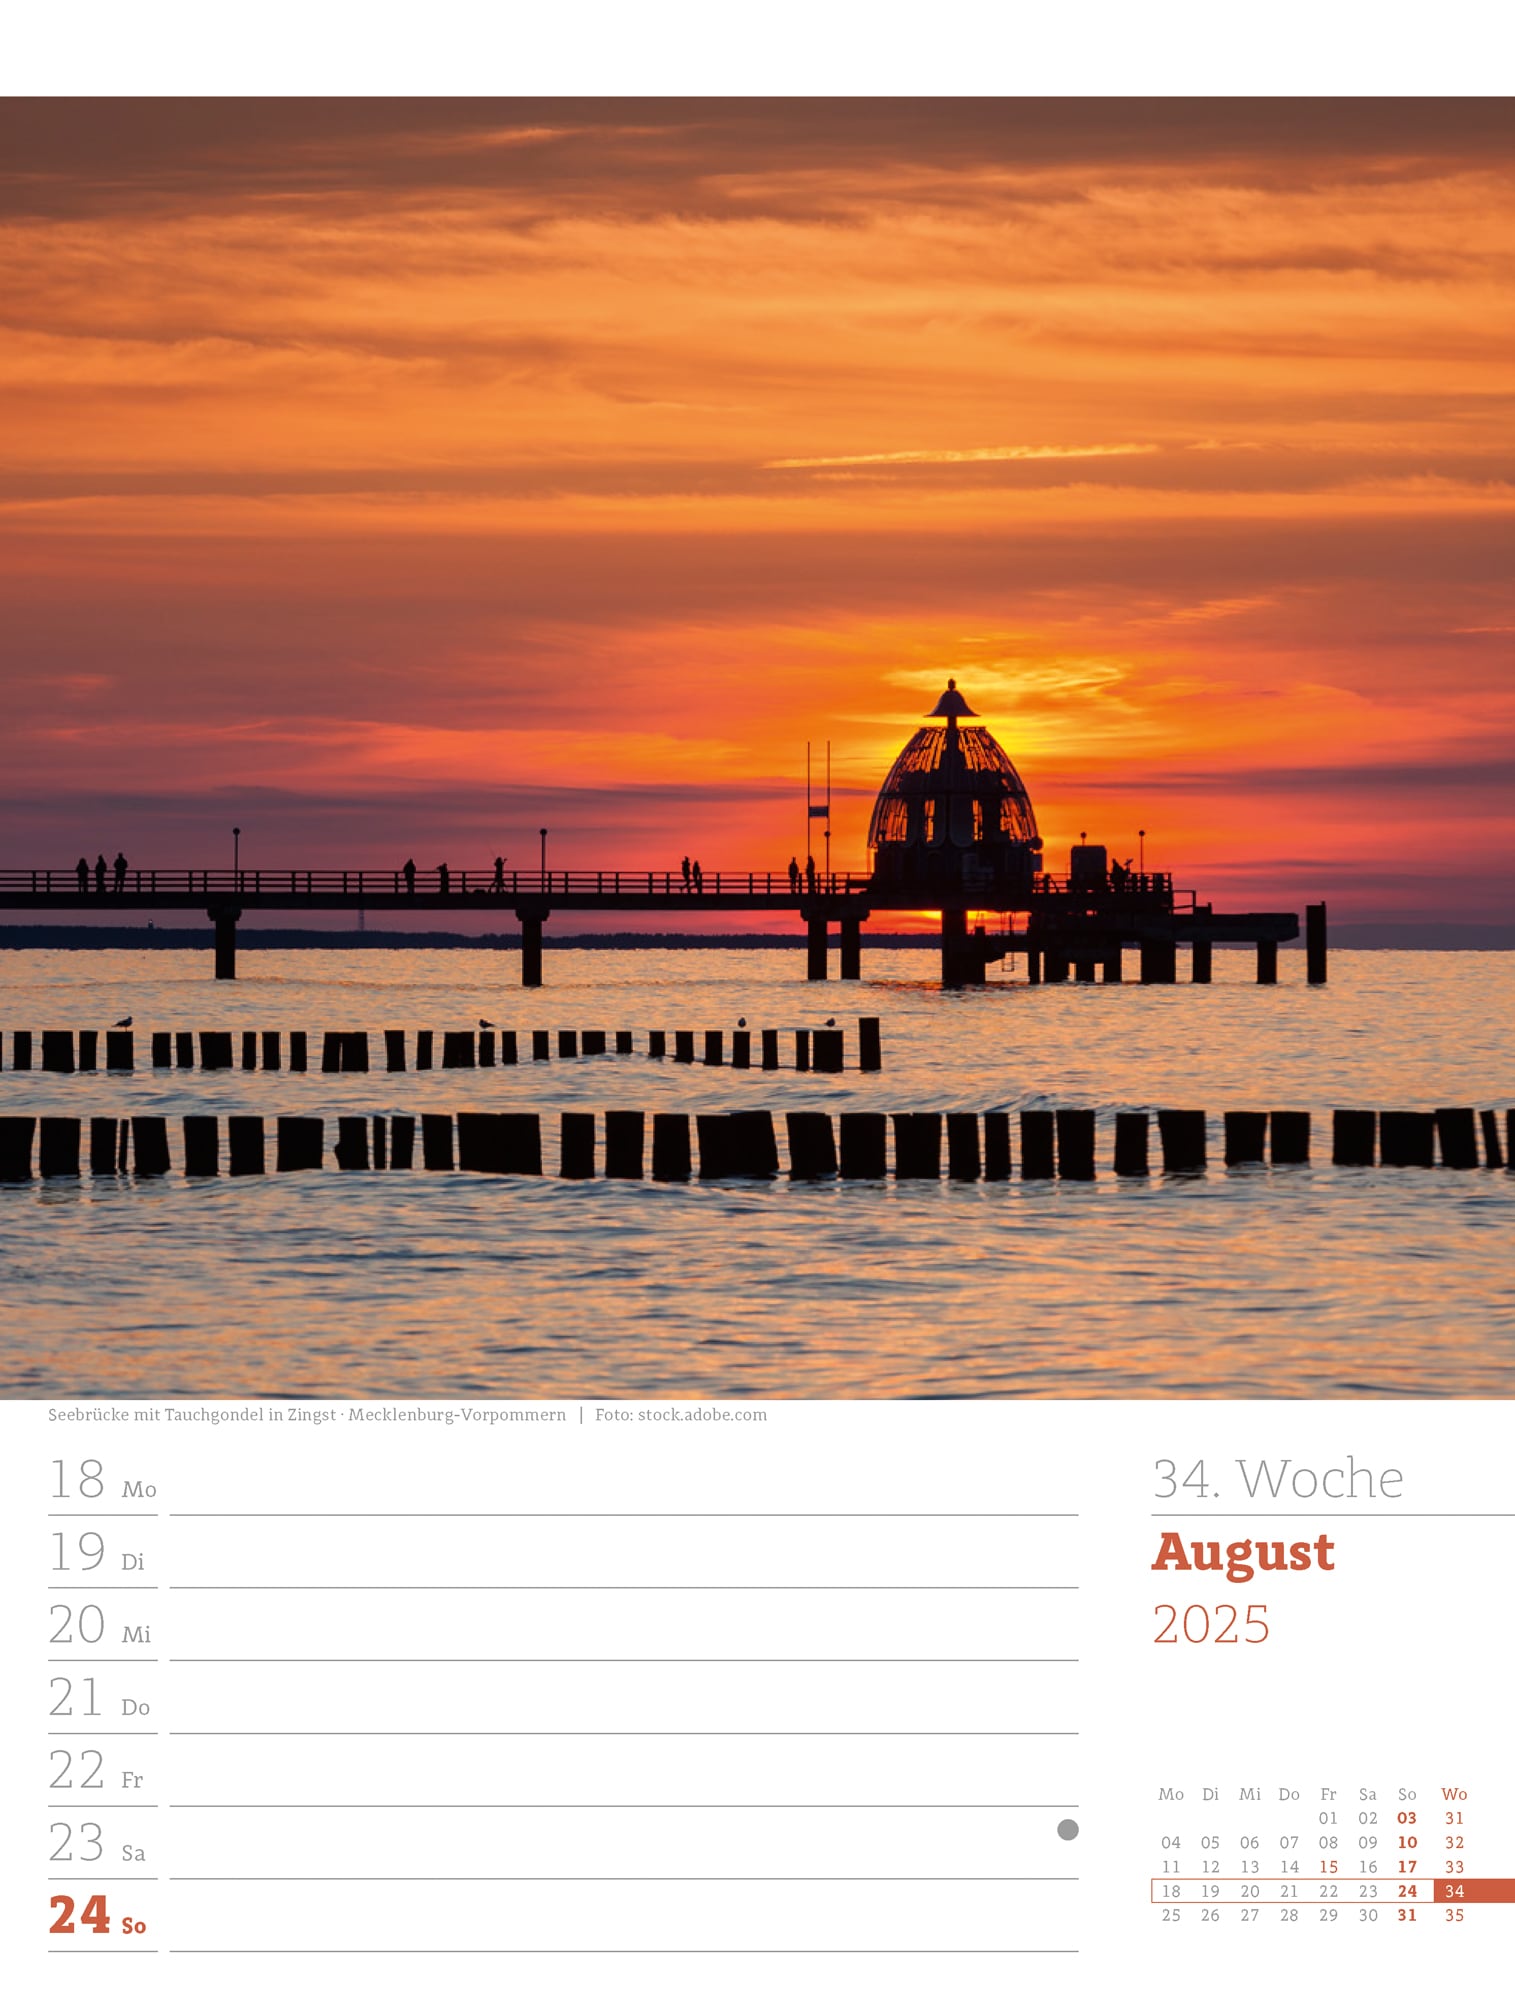 Ackermann Calendar Germany 2025 - Weekly Planner - Inside View 37